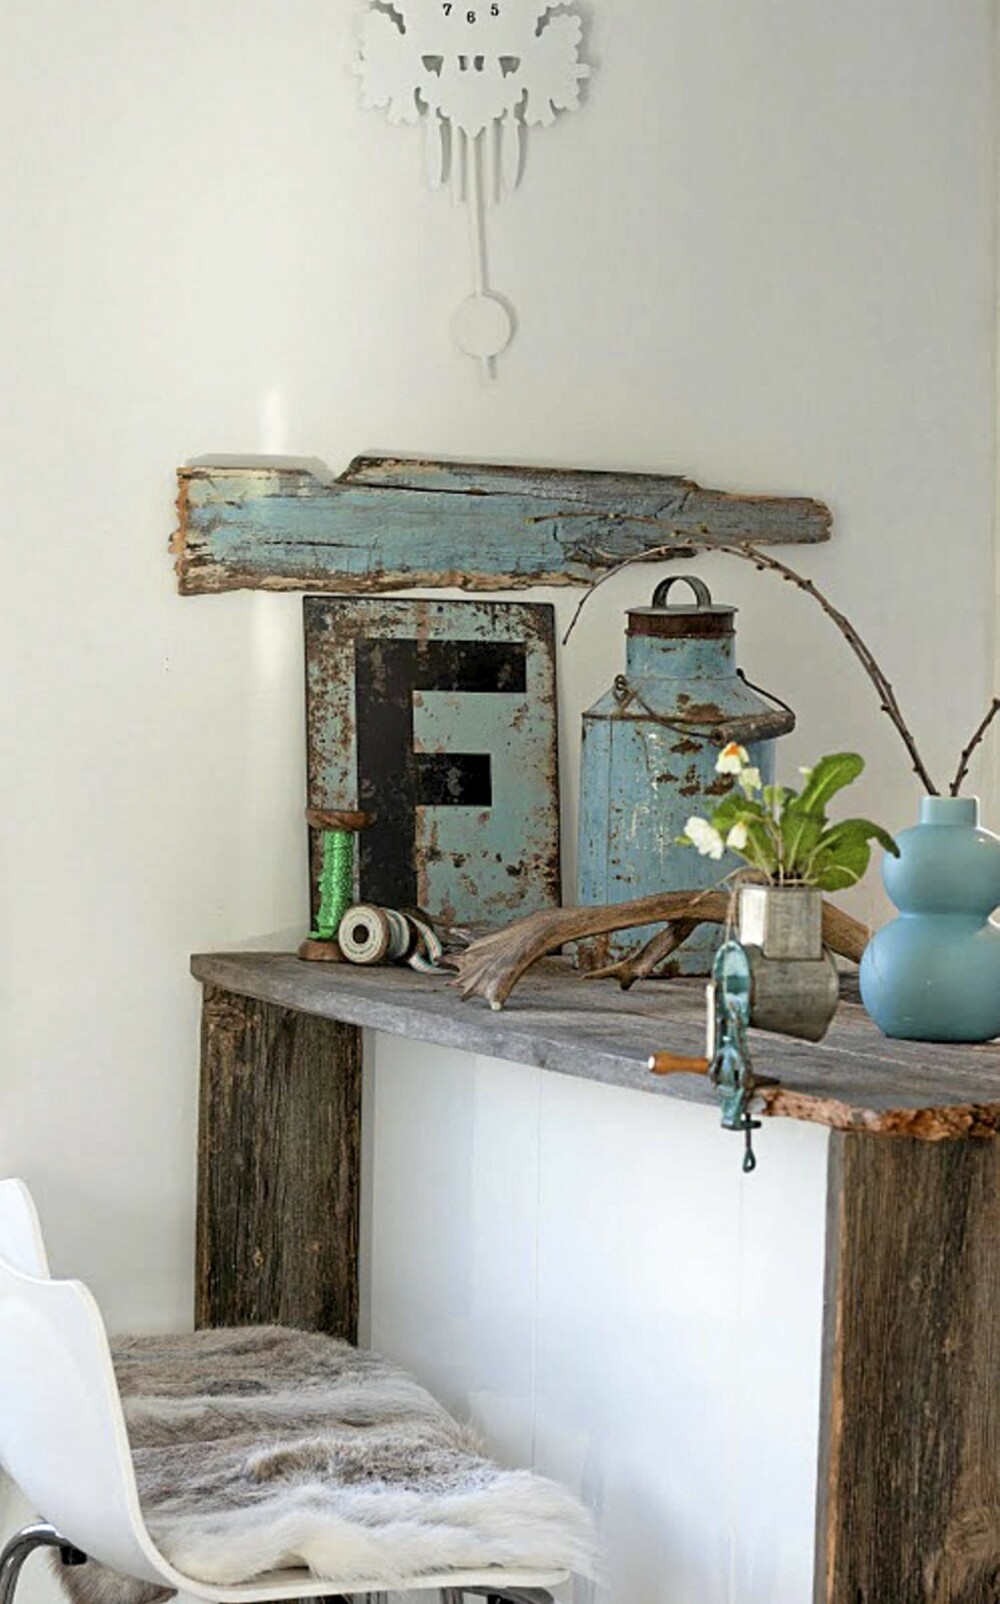 RUSTIKK BENK: Den tøffe kjøkkenbenken i gammelt treverk er laget av firmaet drivved.no